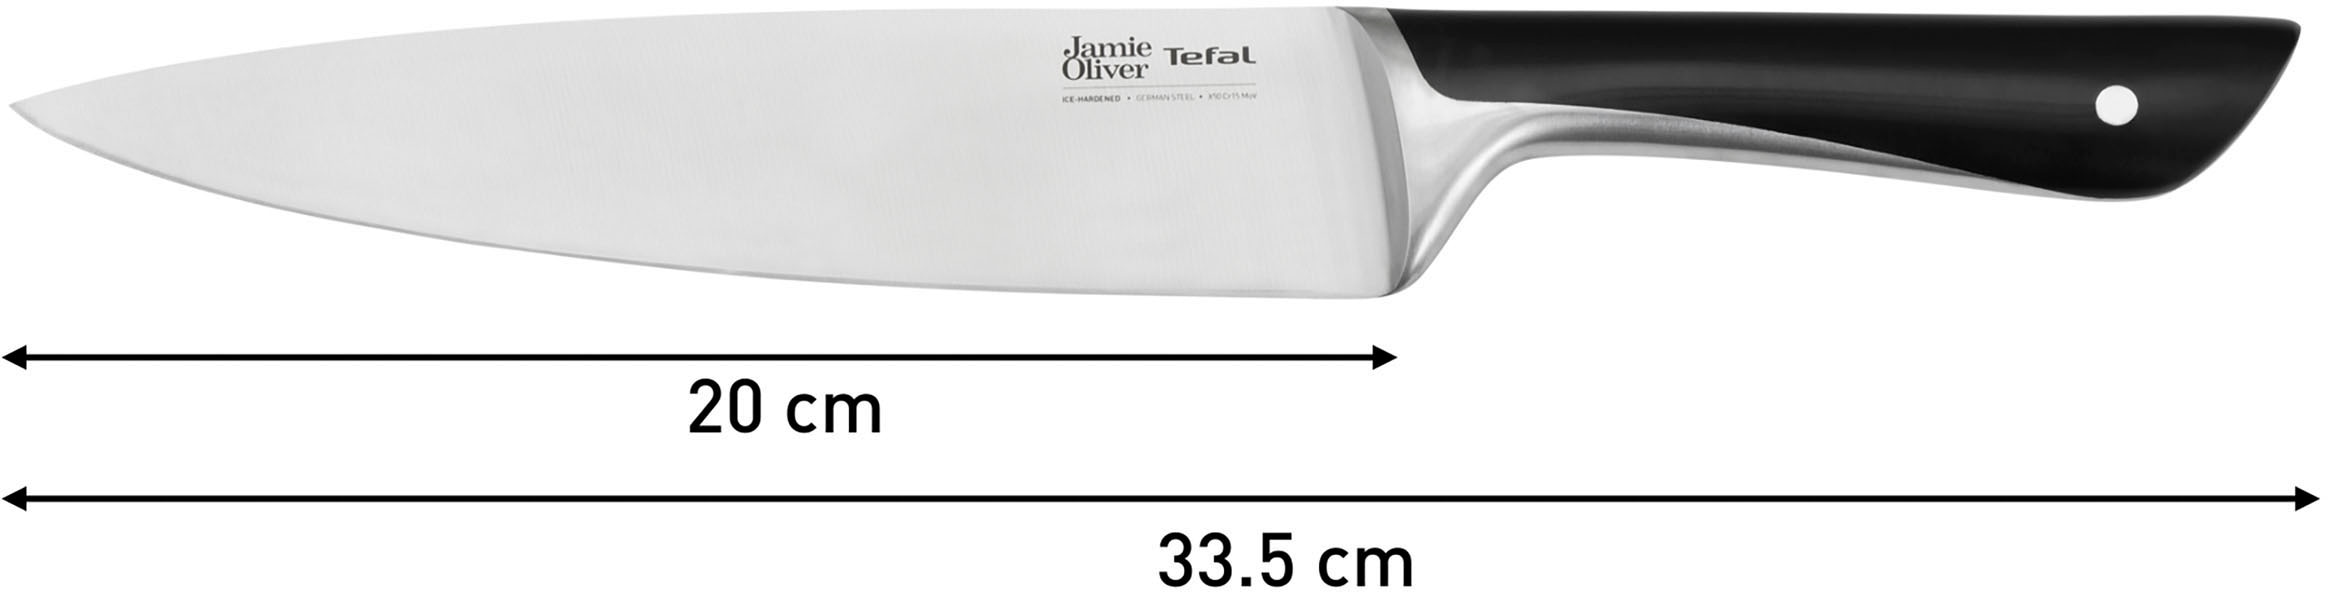 Tefal Pfannen-Set »Jamie Oliver Cook Smart«, Edelstahl 18/10, (Set, je 1 Pfanne 24 und 28 cm, 1 Kochmesser), stilvolle Edelstahl-Pfannen, inkl. Kochmesser, Rezeptbuch